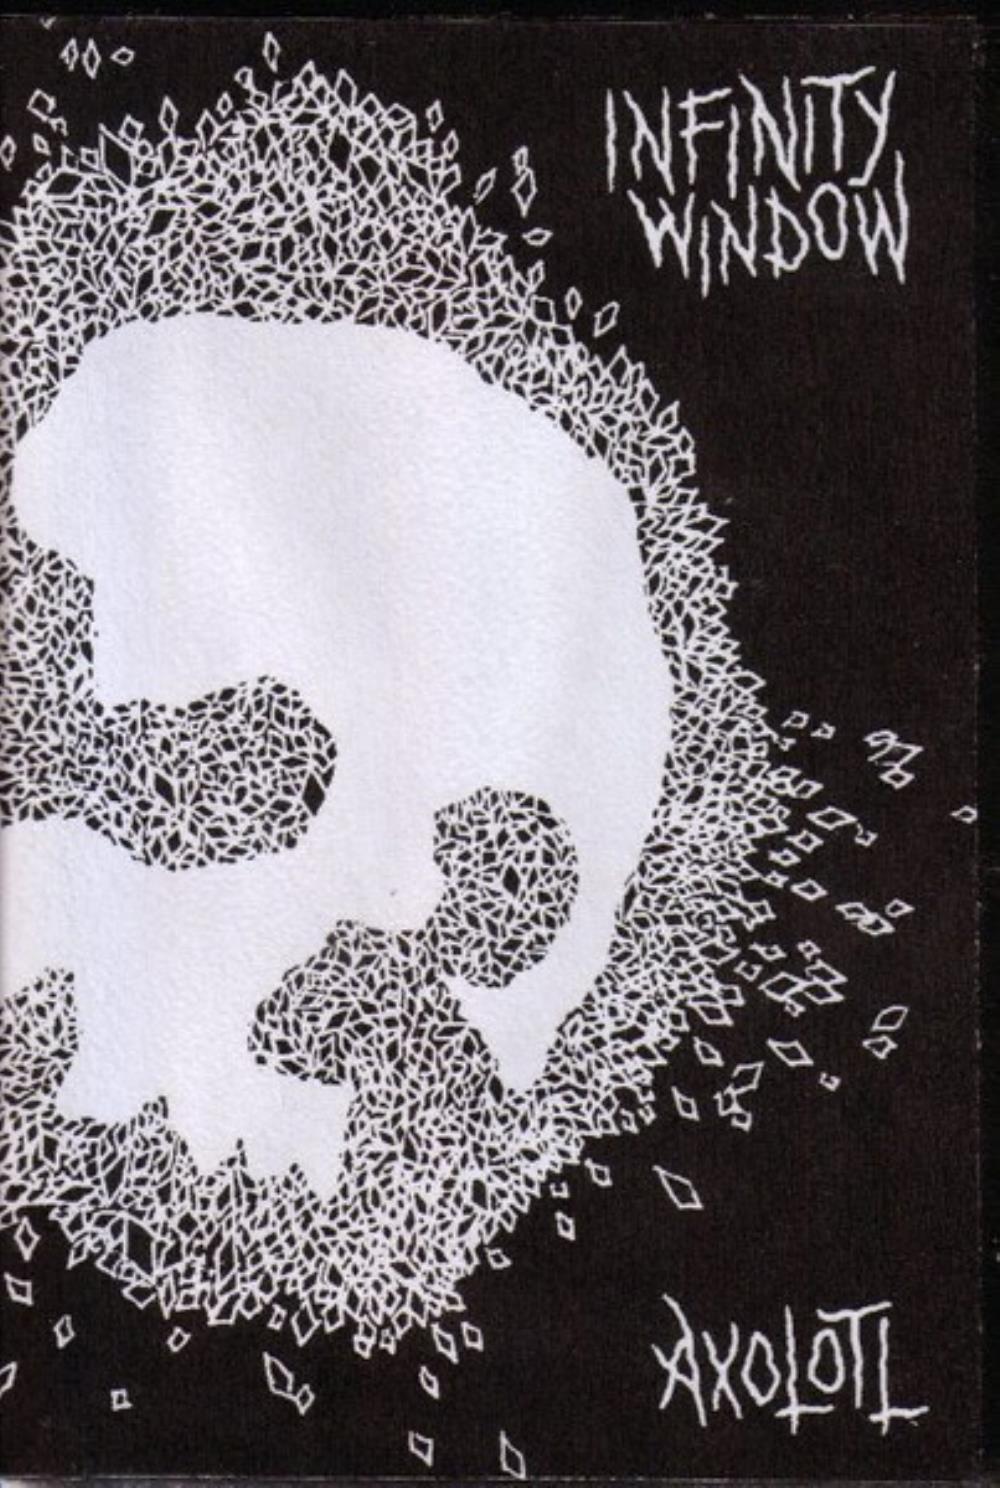 Infinity Window - Axolotl / Infinity Window CD (album) cover